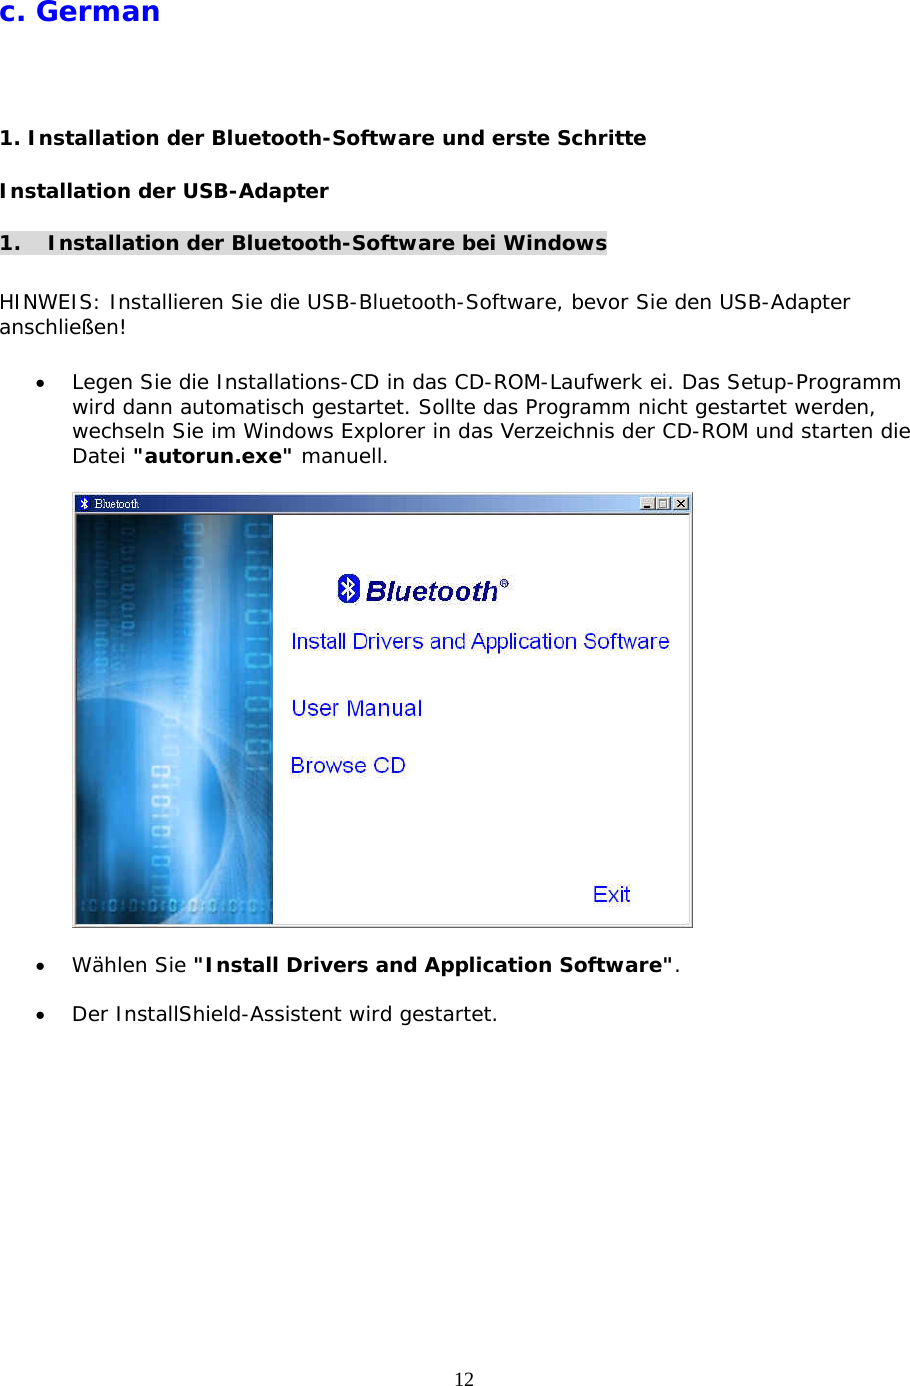 12 c. German  1. Installation der Bluetooth-Software und erste Schritte Installation der USB-Adapter  1.  Installation der Bluetooth-Software bei Windows  HINWEIS: Installieren Sie die USB-Bluetooth-Software, bevor Sie den USB-Adapter anschließen!  •  Legen Sie die Installations-CD in das CD-ROM-Laufwerk ei. Das Setup-Programm wird dann automatisch gestartet. Sollte das Programm nicht gestartet werden, wechseln Sie im Windows Explorer in das Verzeichnis der CD-ROM und starten die Datei &quot;autorun.exe&quot; manuell.    •  Wählen Sie &quot;Install Drivers and Application Software&quot;.  •  Der InstallShield-Assistent wird gestartet. 